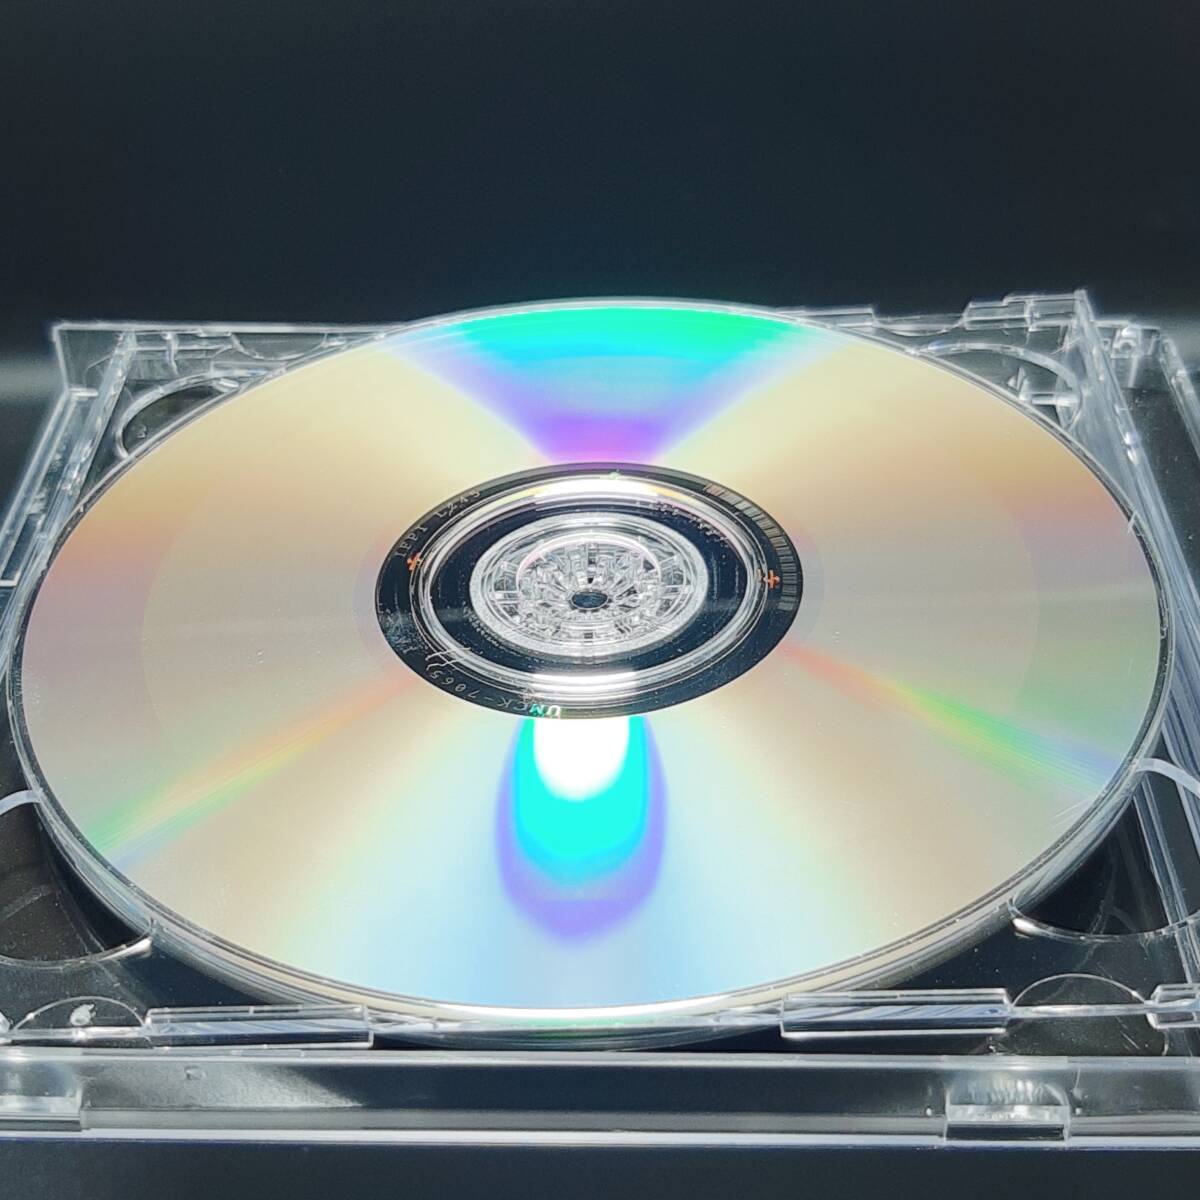 MA17【初回盤】藤井風 CD HELP EVER HURT NEVER 初回限定盤 セル版 スリーブケース ブックレット 初回限定盤